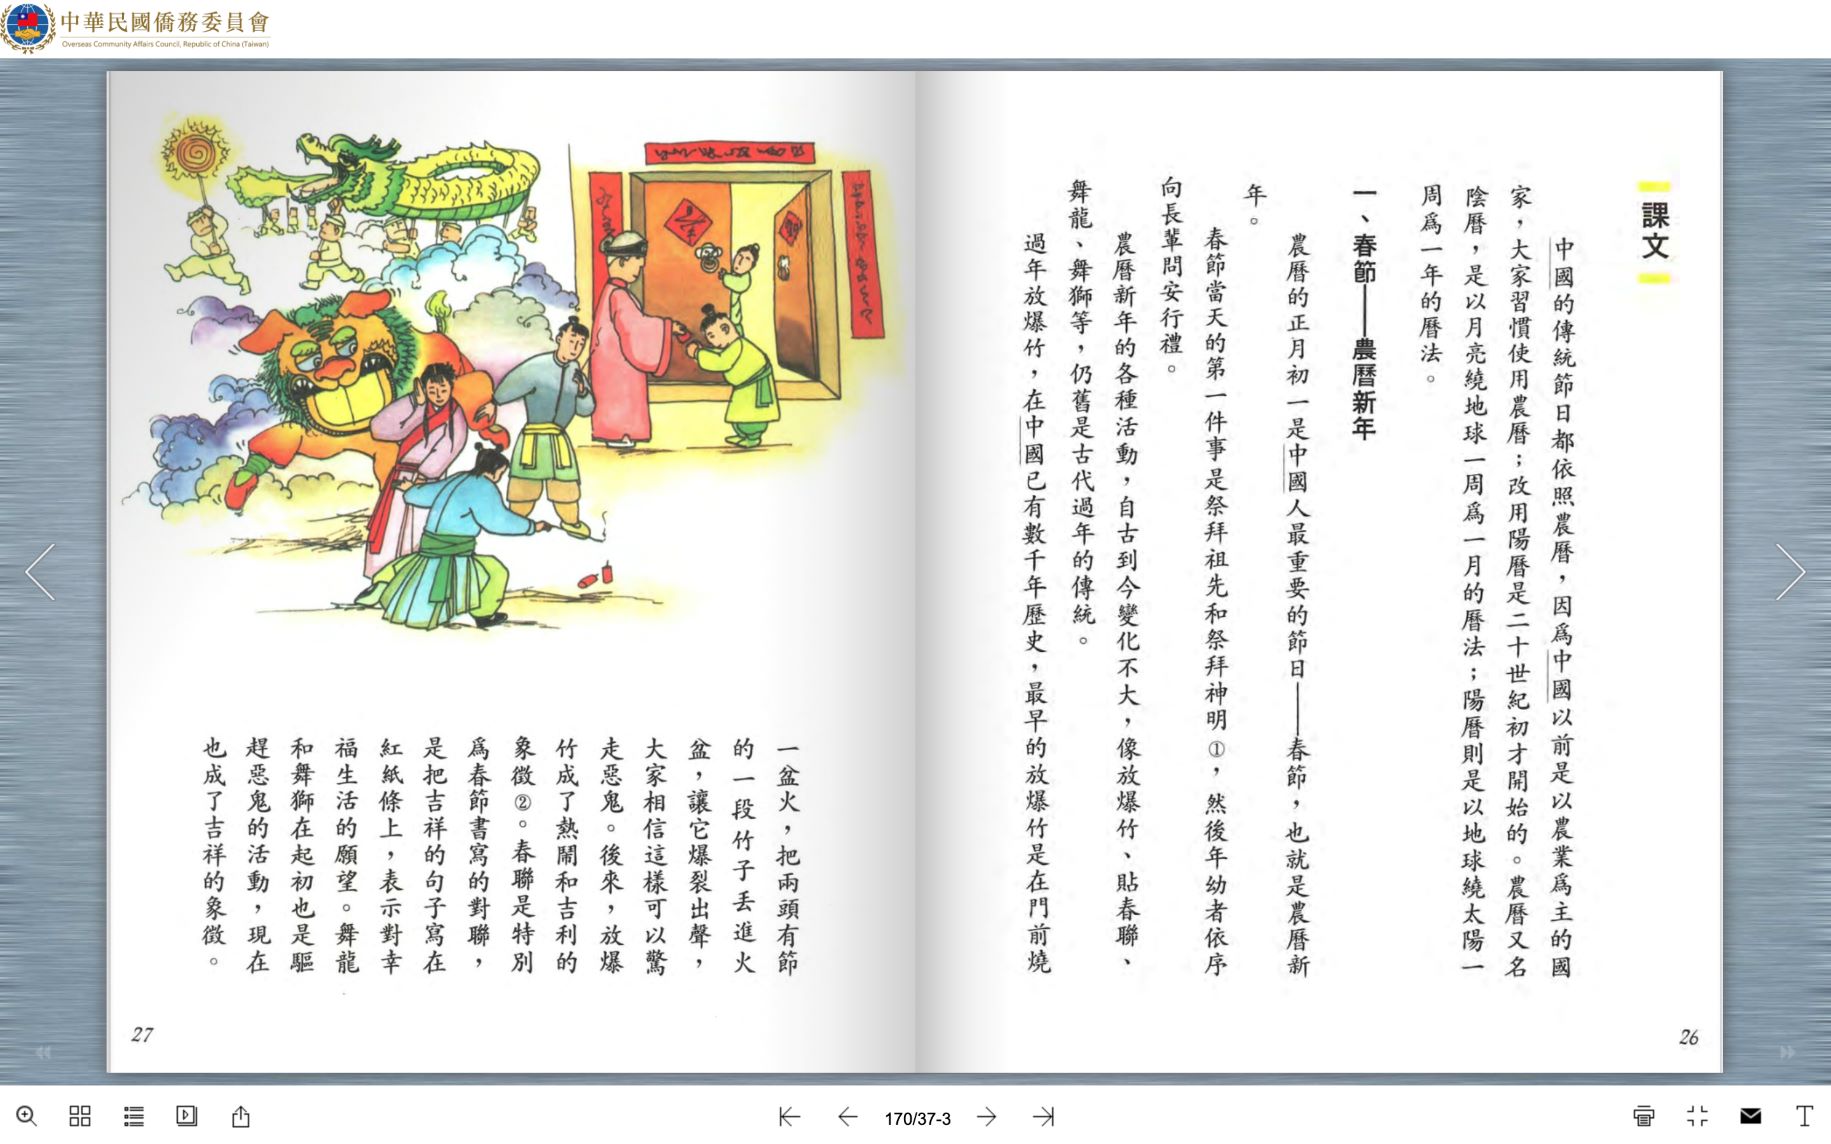 《初中華文》5中課文介紹傳統節慶，都是中國重要節慶曆。翻攝僑委會網站